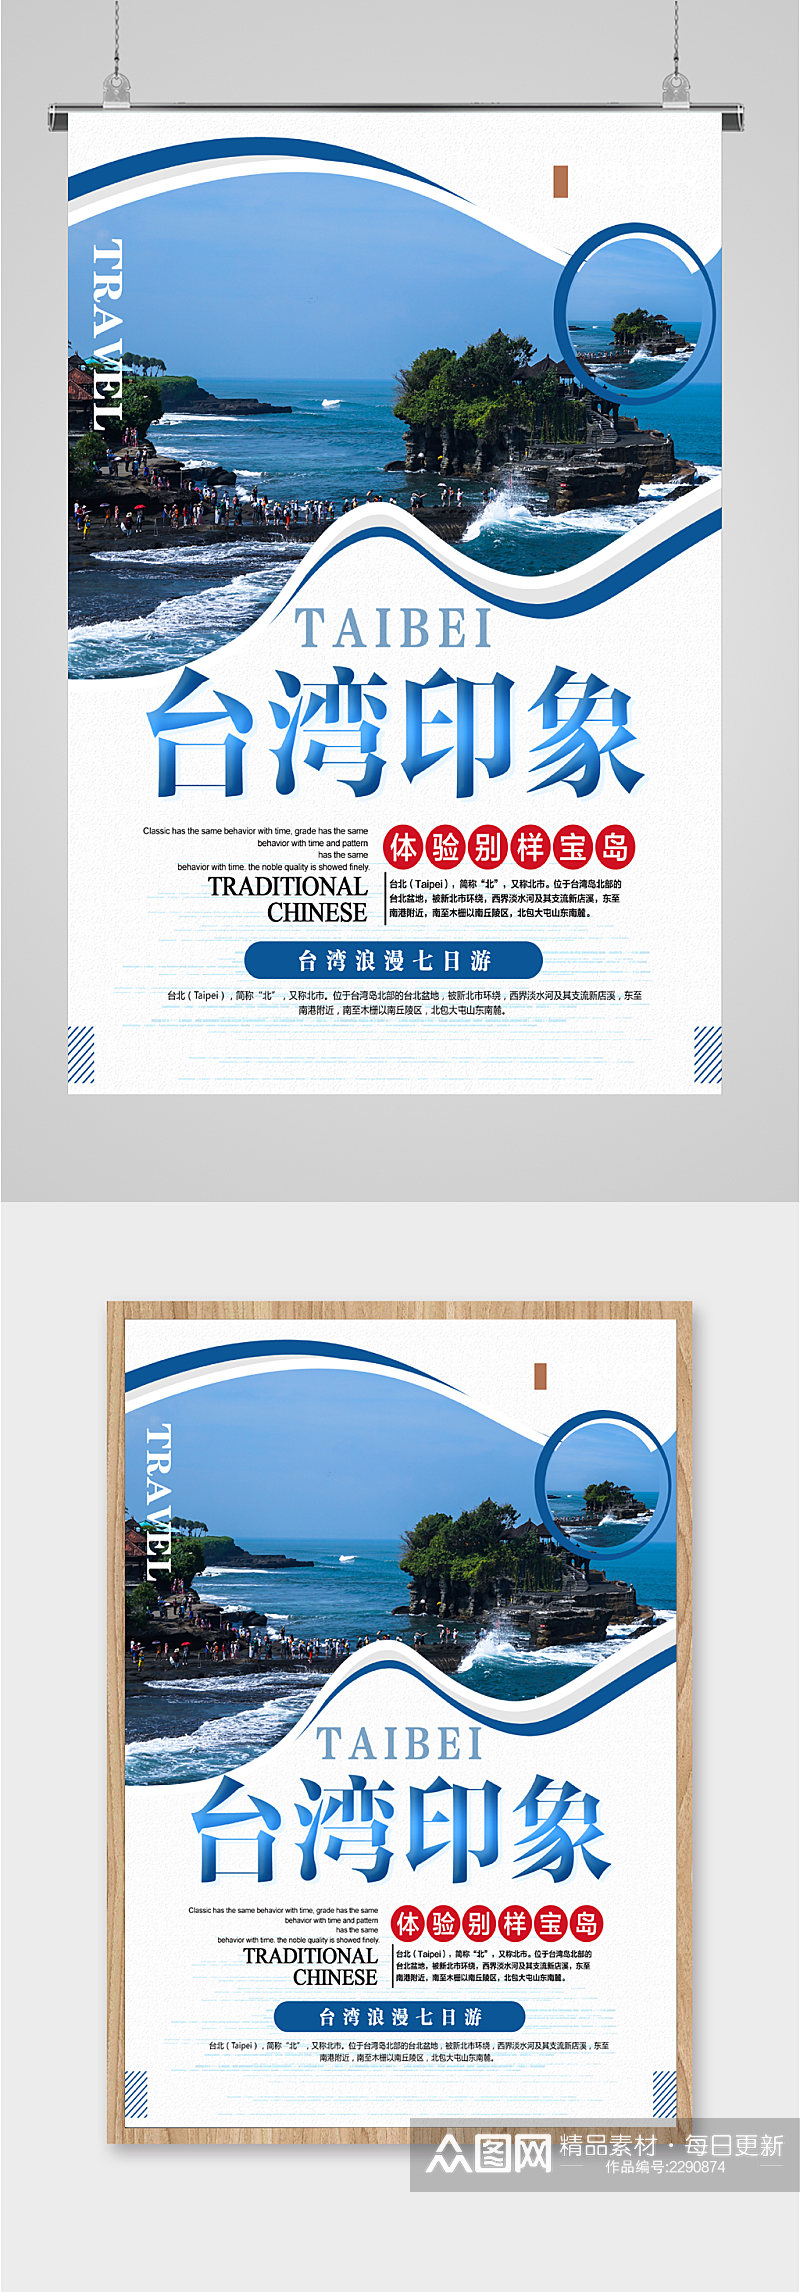 台湾印象宝岛旅游海报素材